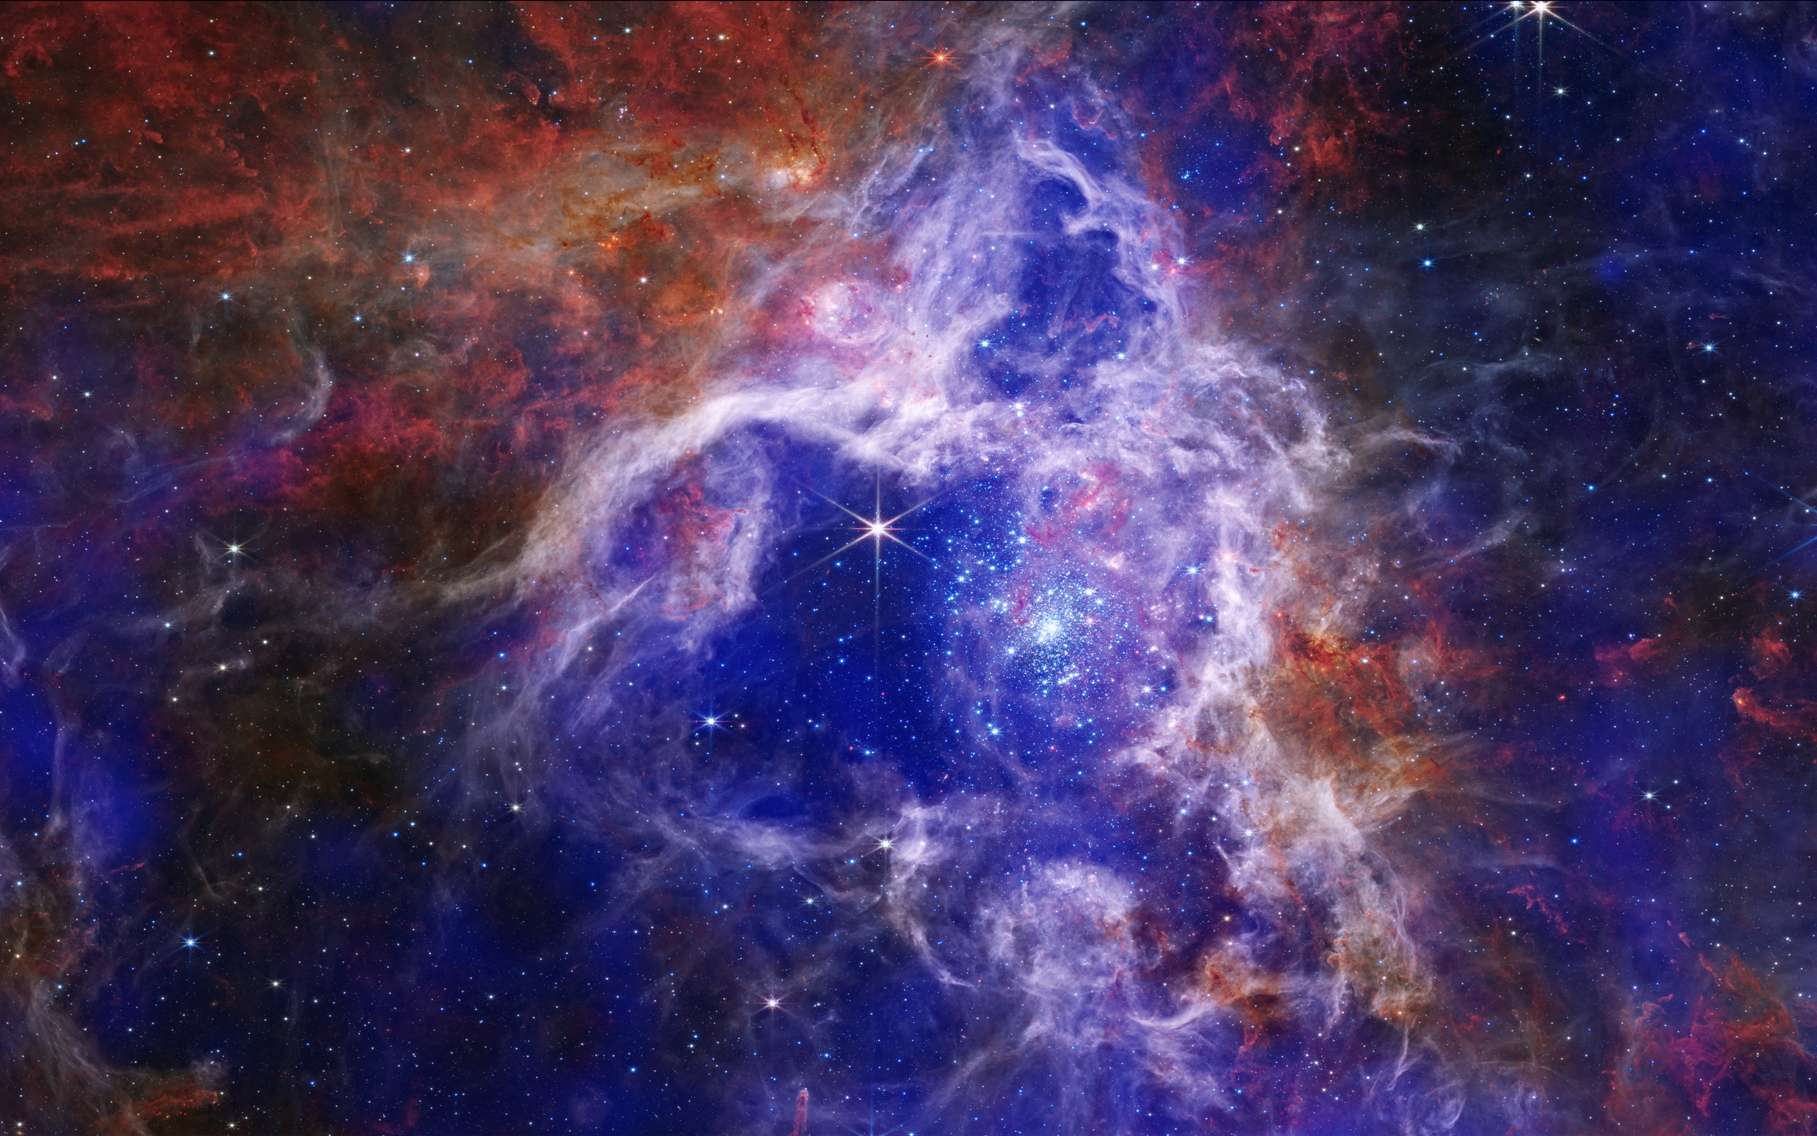 On a trouvé deux restes de supernovas imbriqués dans la nébuleuse de la Tarentule